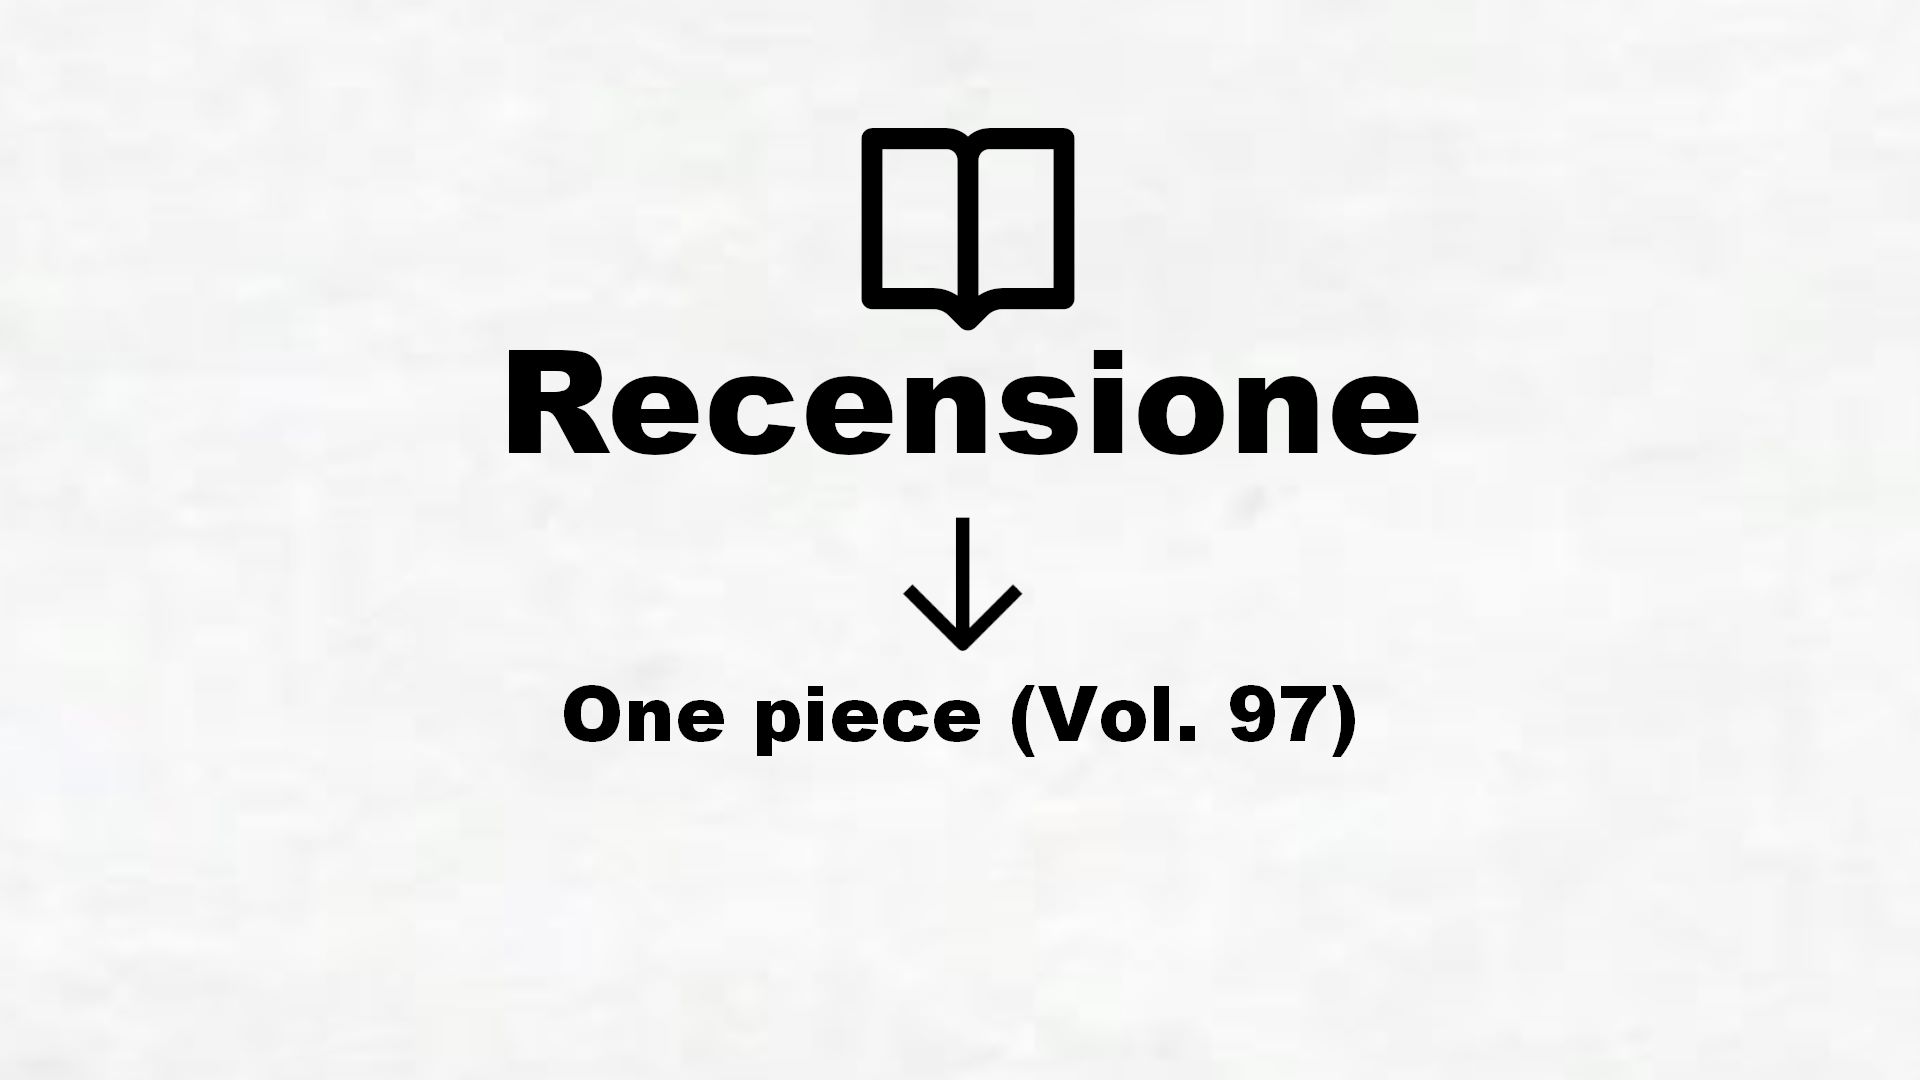 One piece (Vol. 97) – Recensione Libro